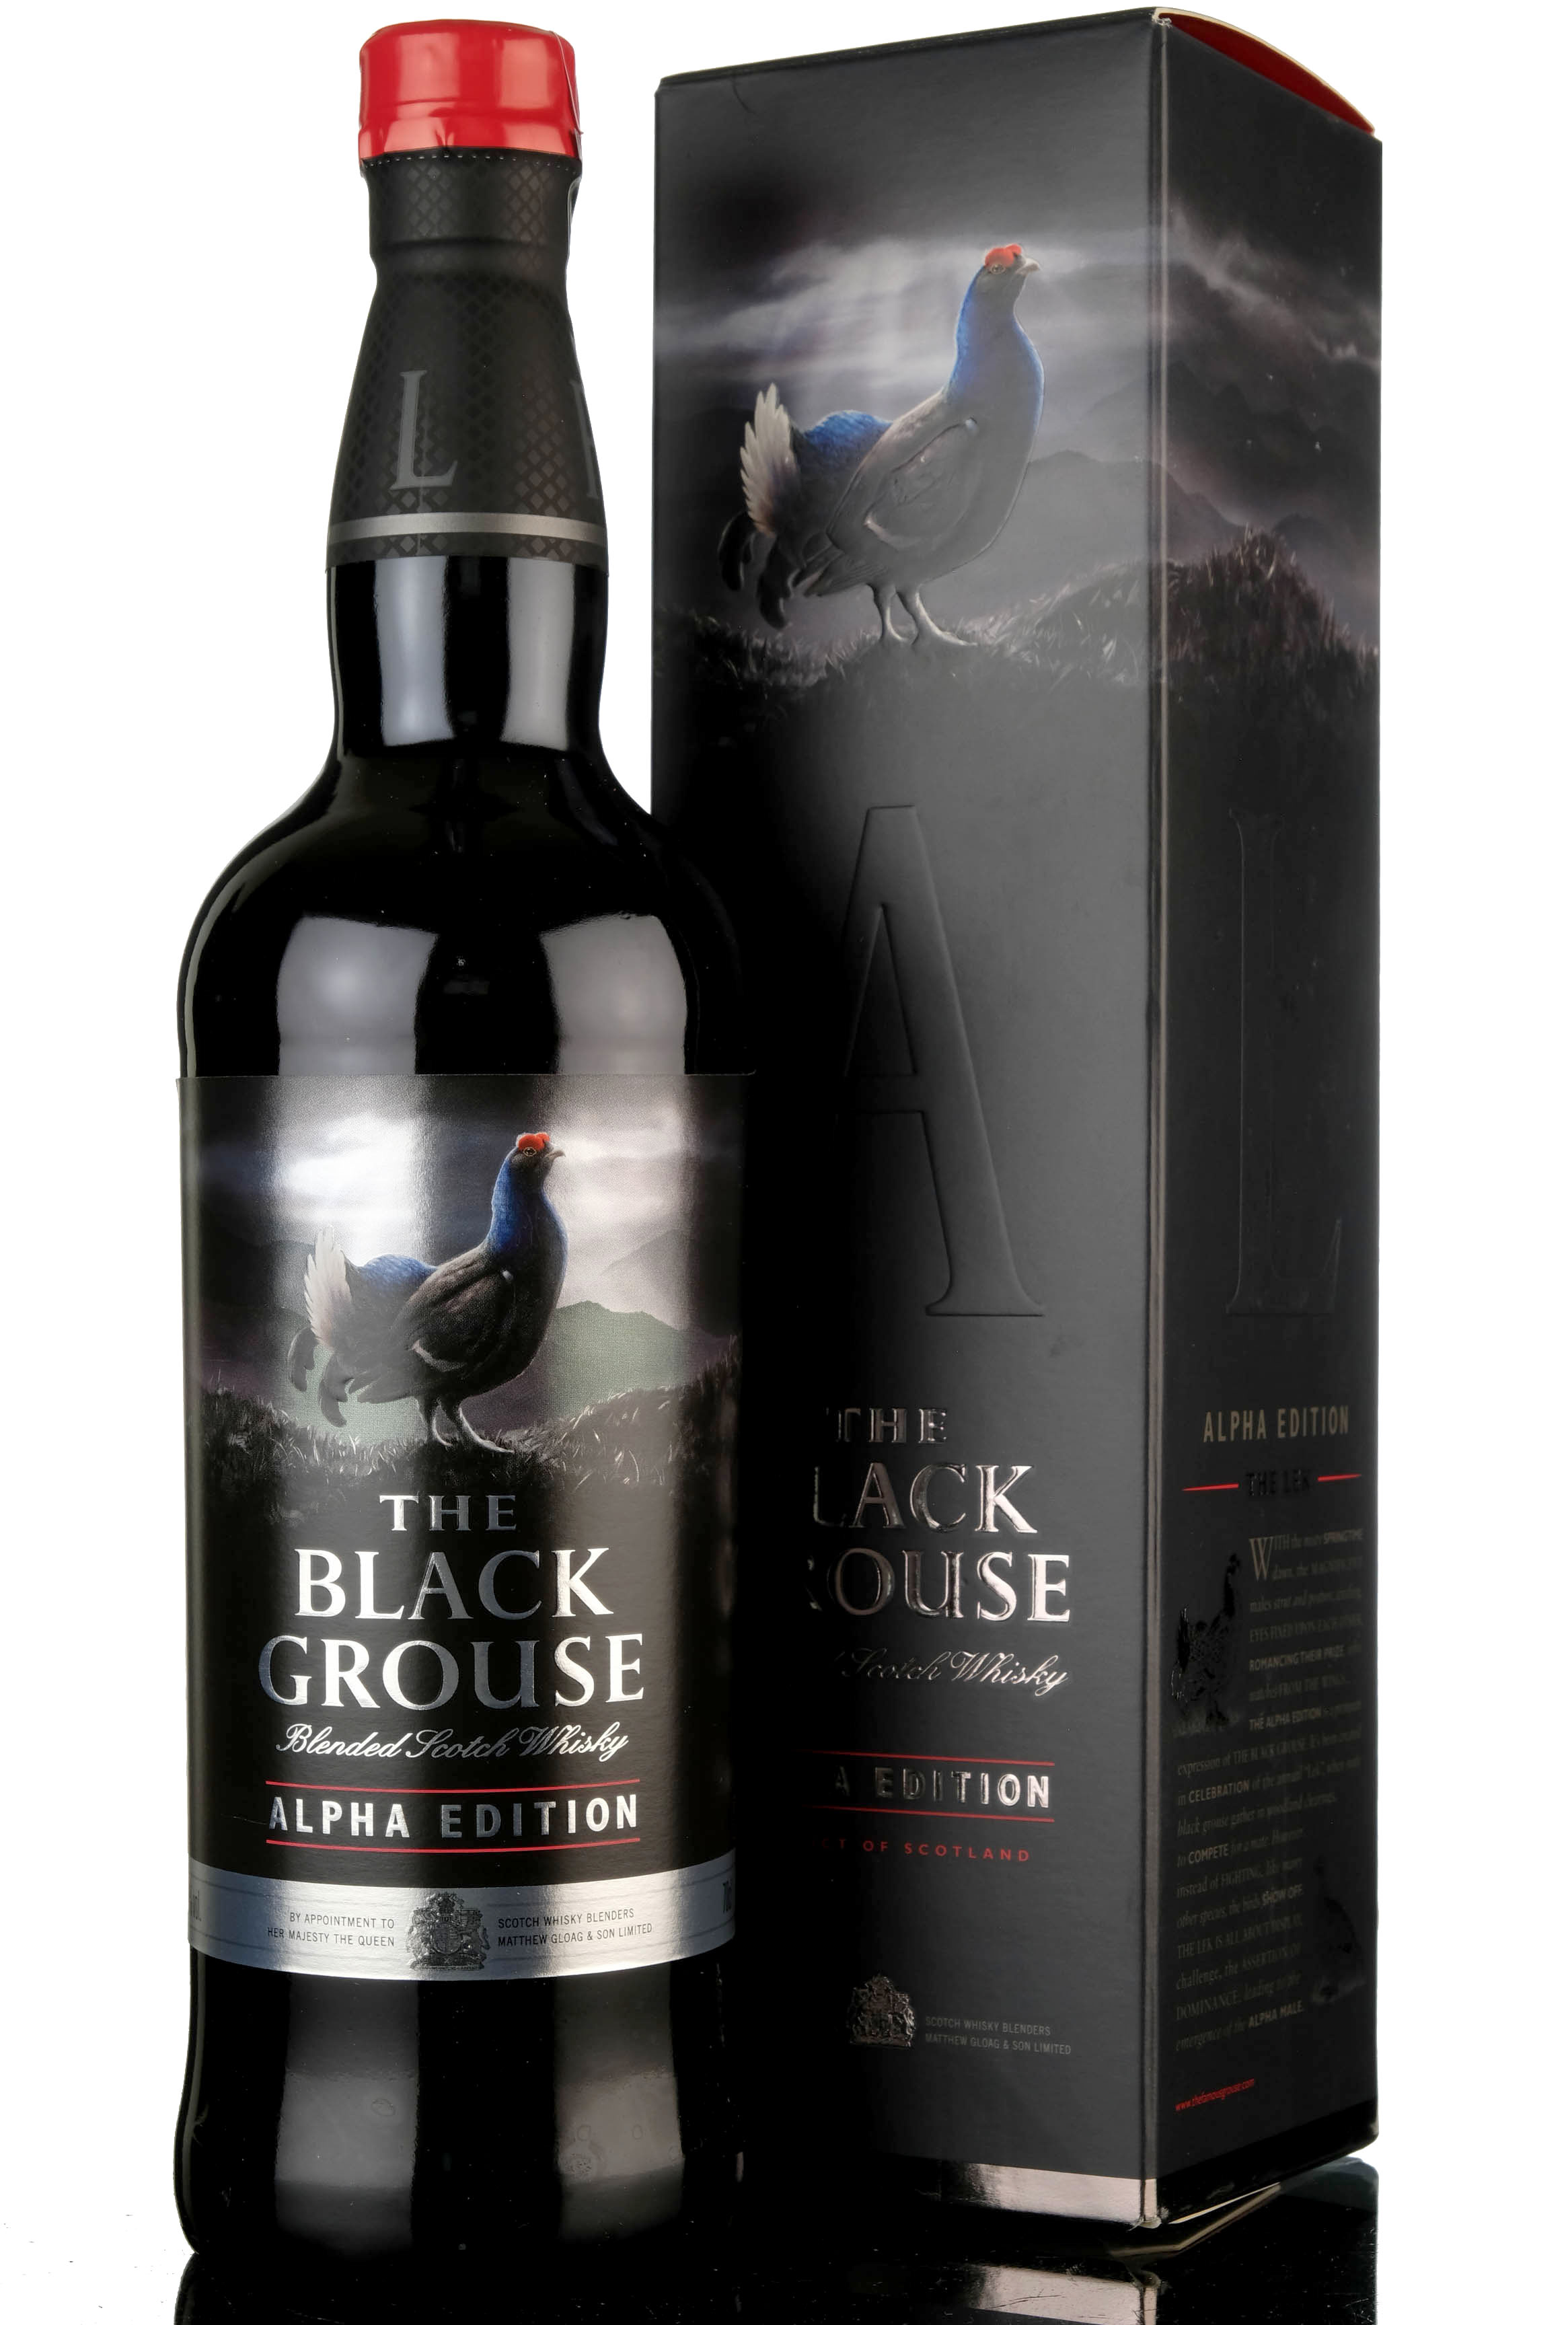 Black Grouse Alpha Edition